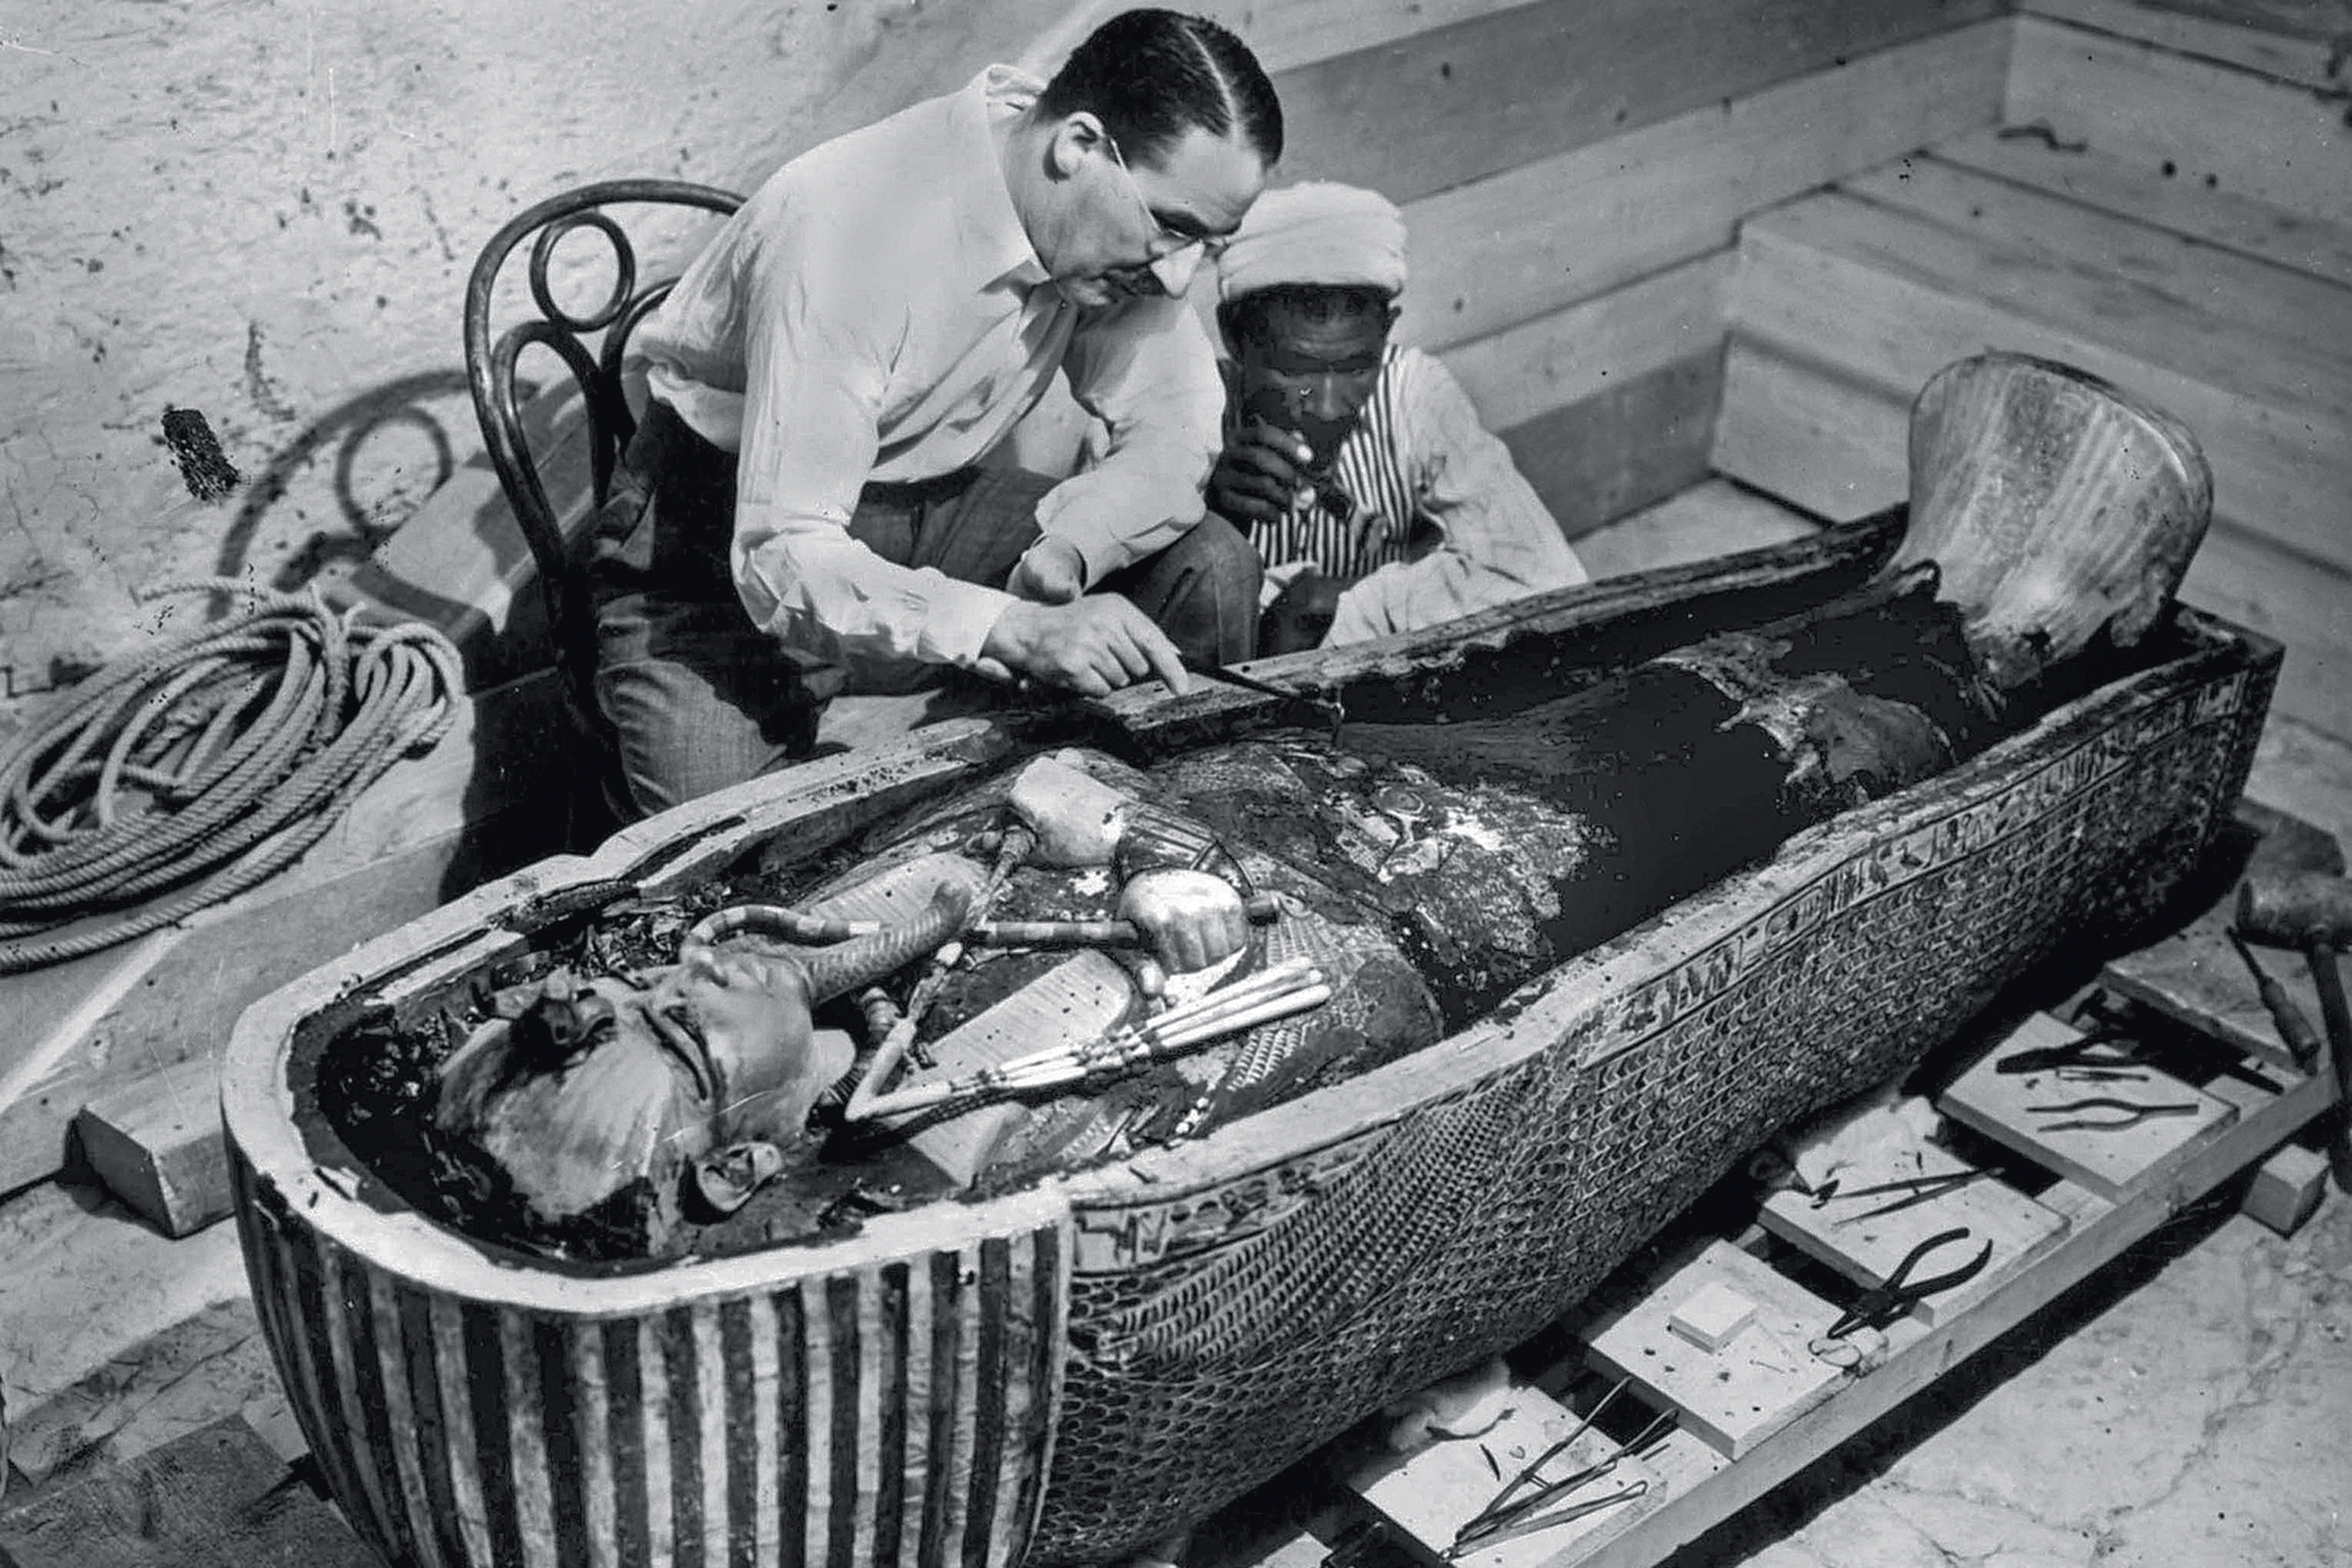 EM EQUIPE - Luxor, 1922: Carter, a tumba e um de seus anônimos assistentes -